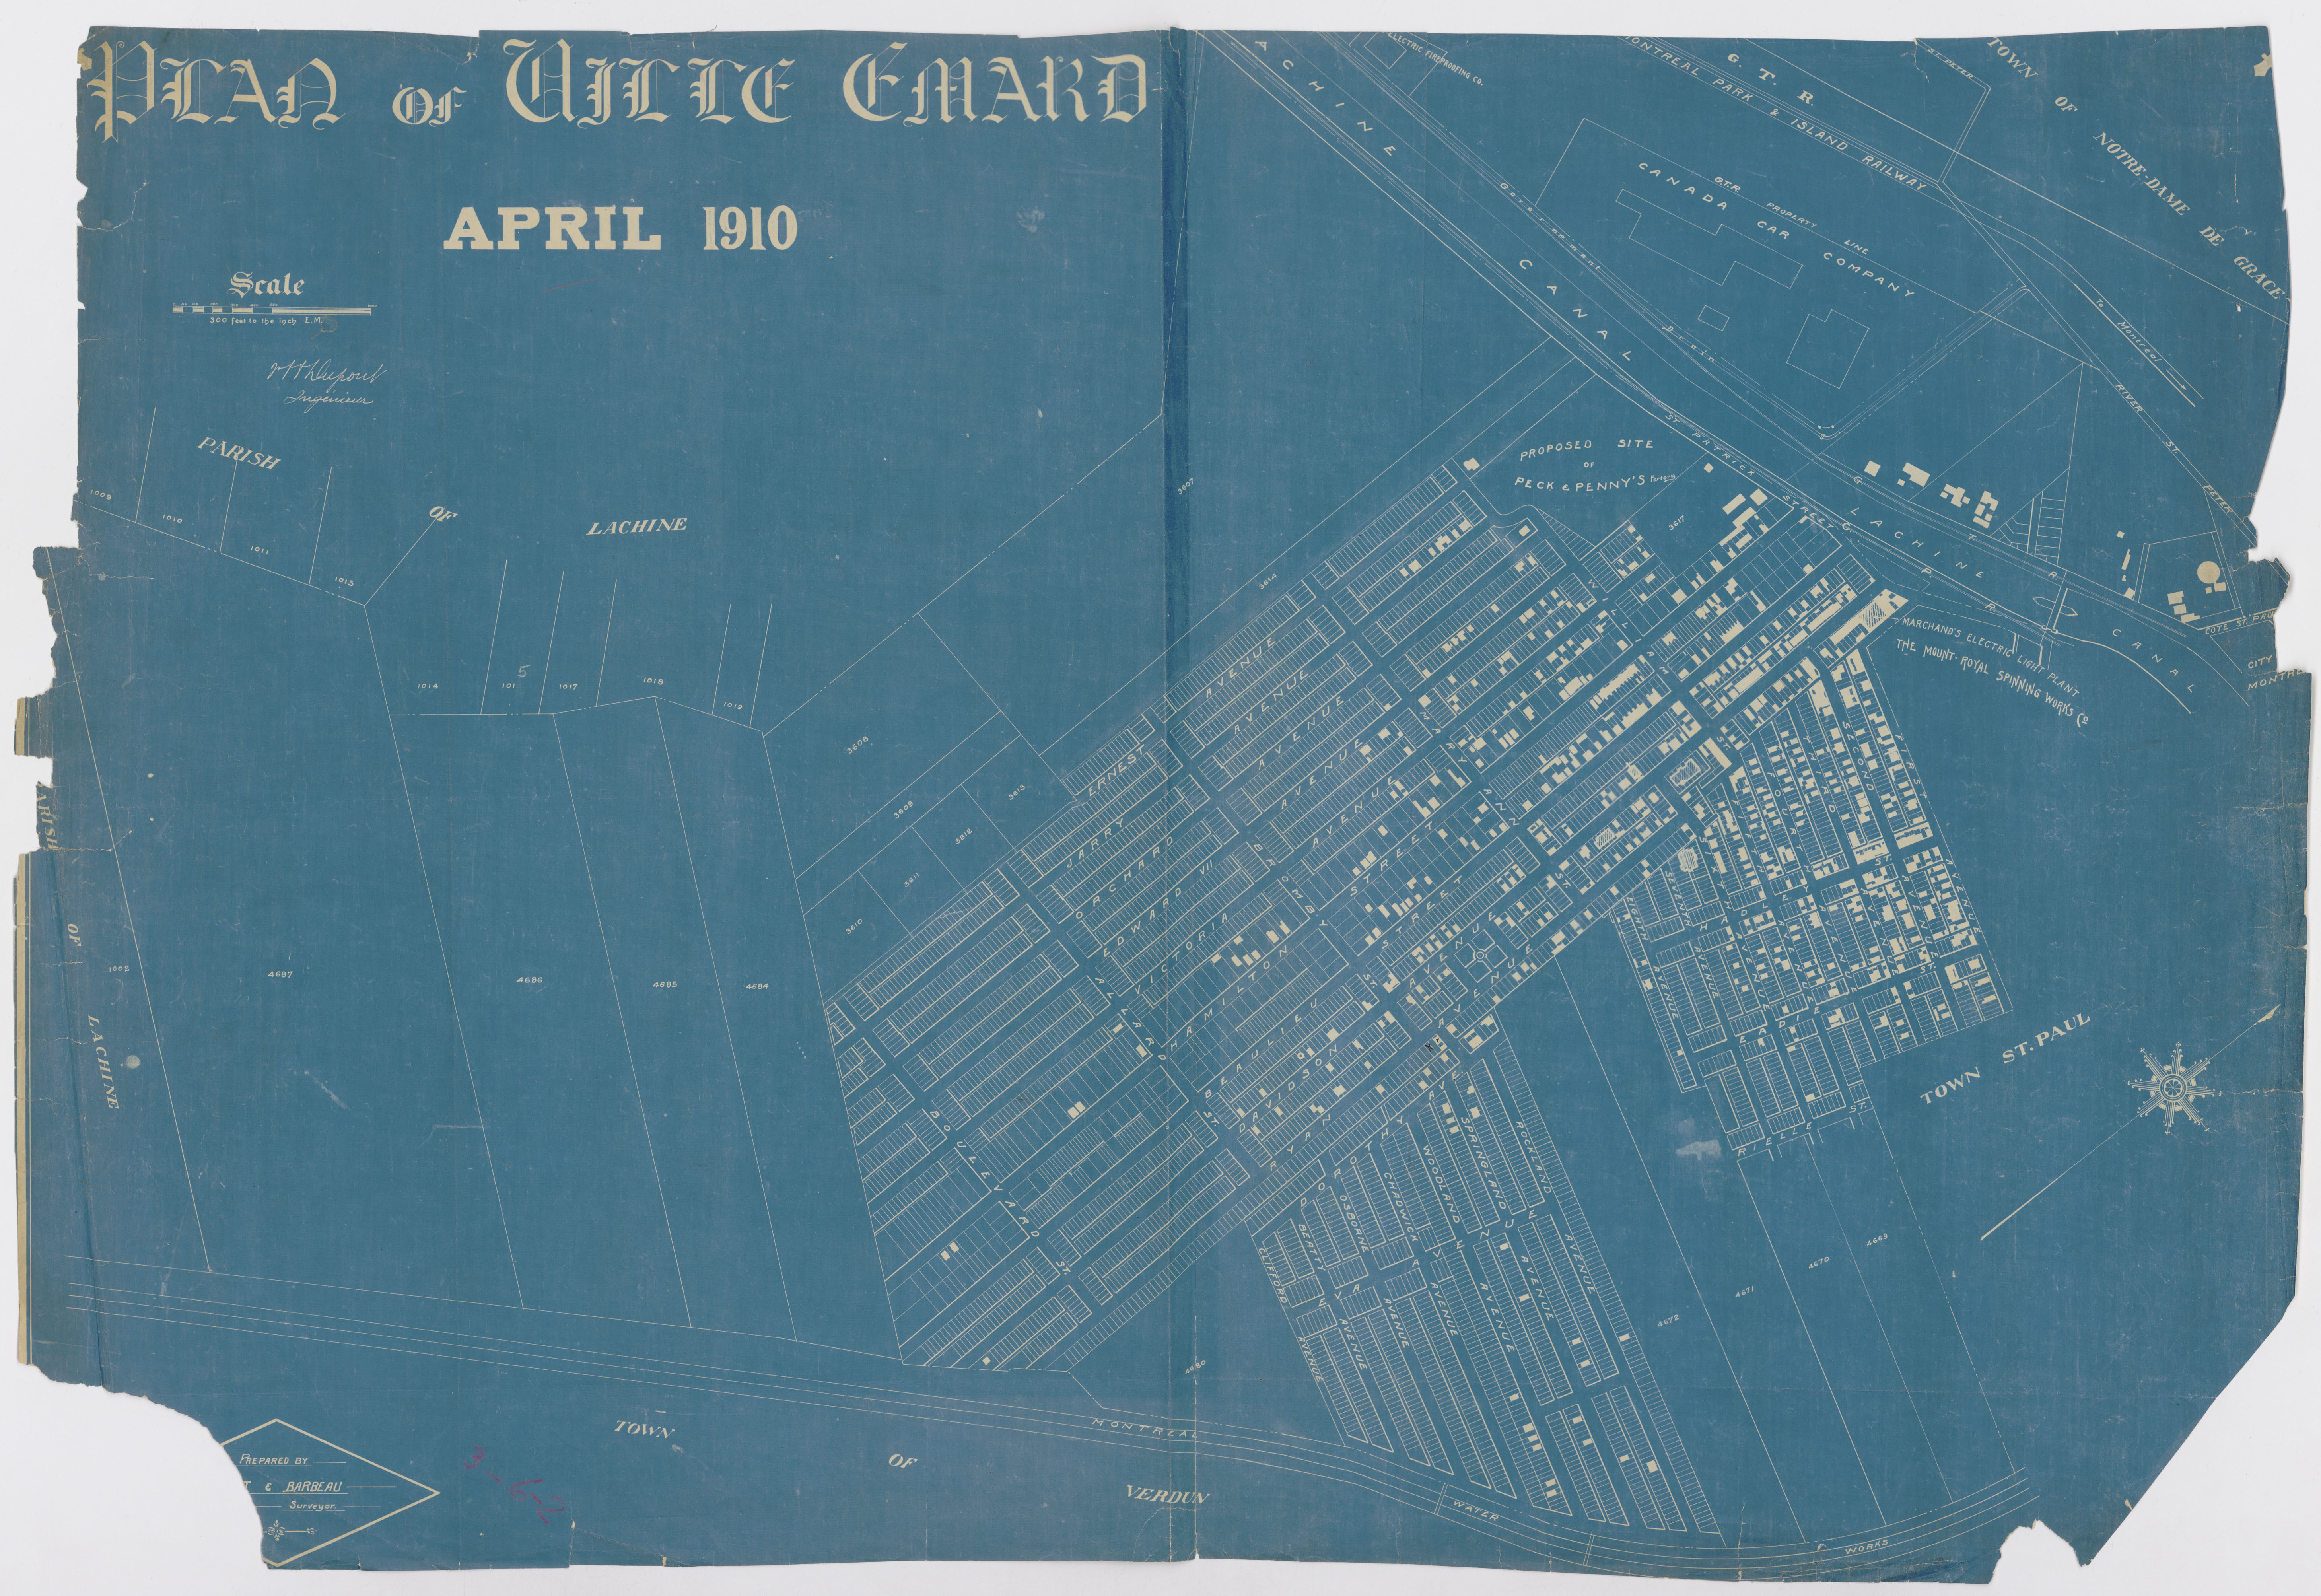 Plan de Ville-Émard en avril 1910